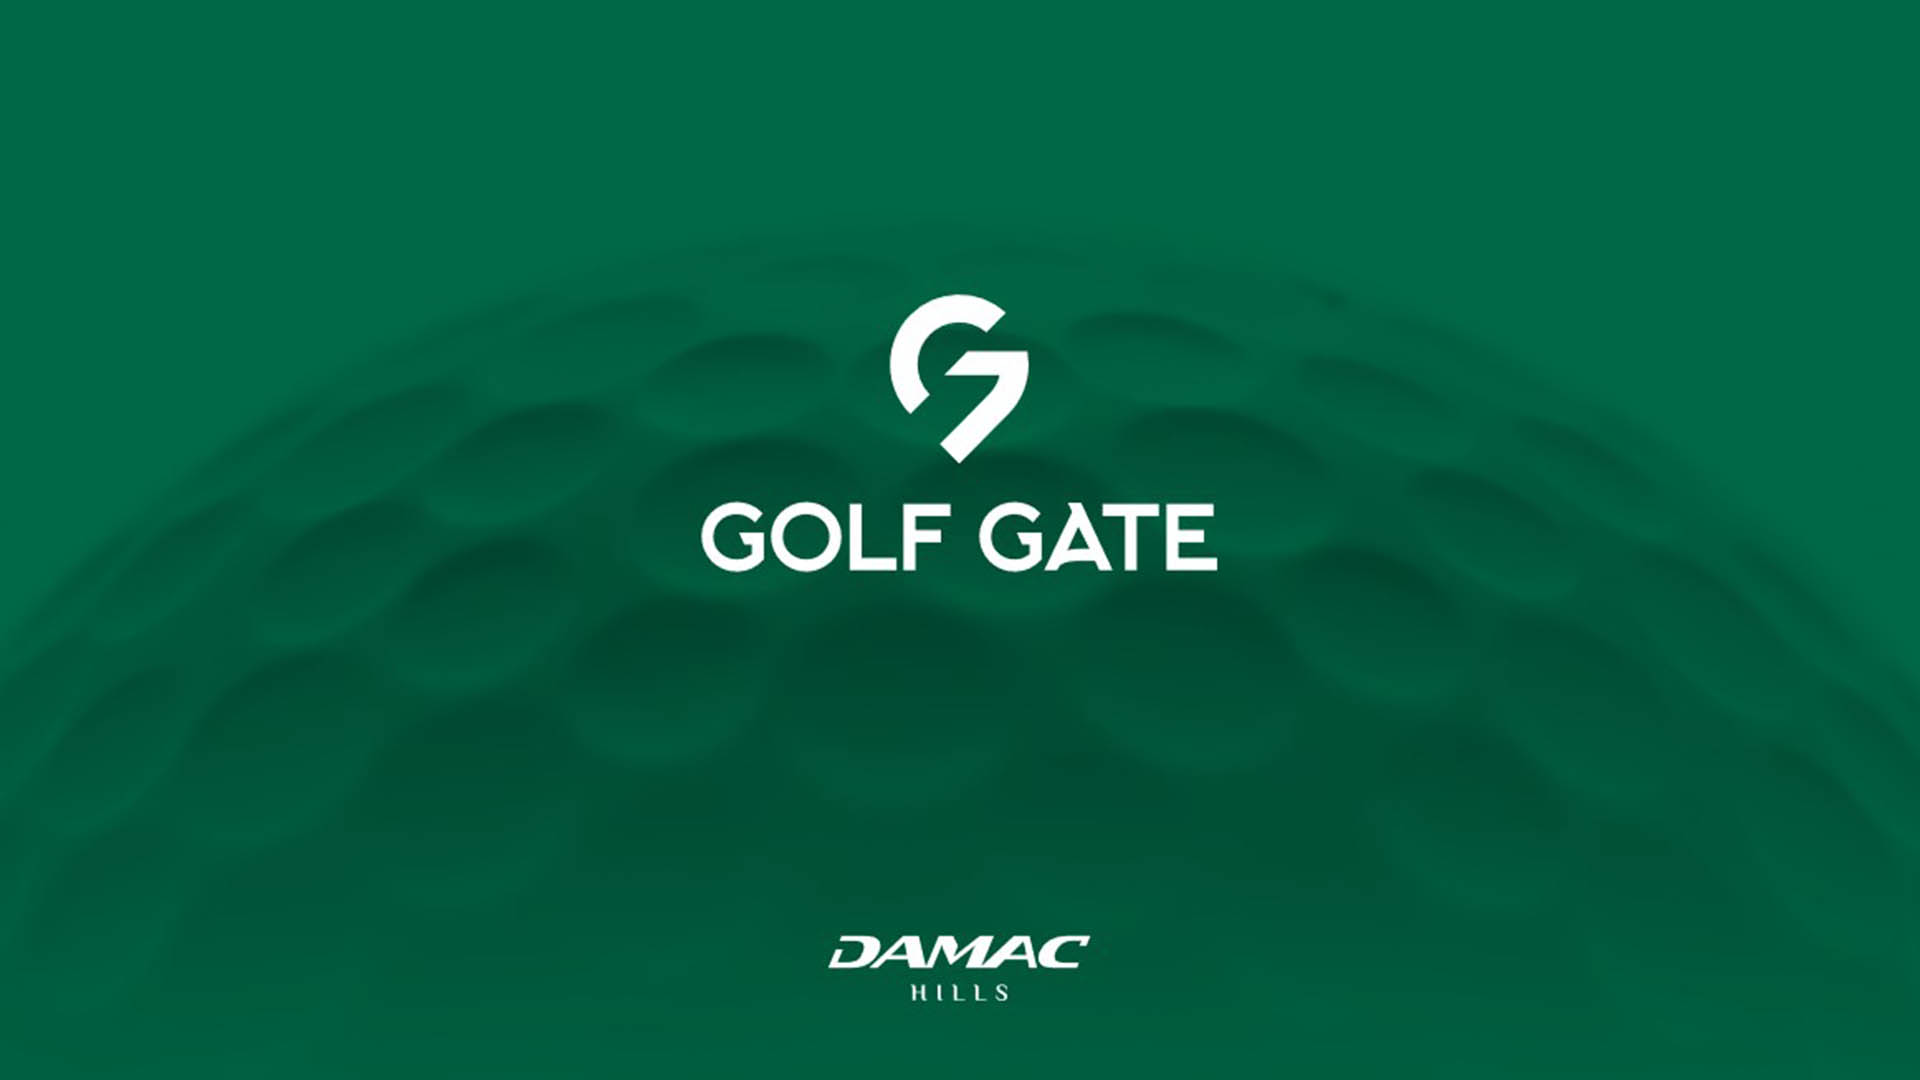 GOLF GATE by Damac Properties in DAMAC Hills, Dubai, UAE - 8